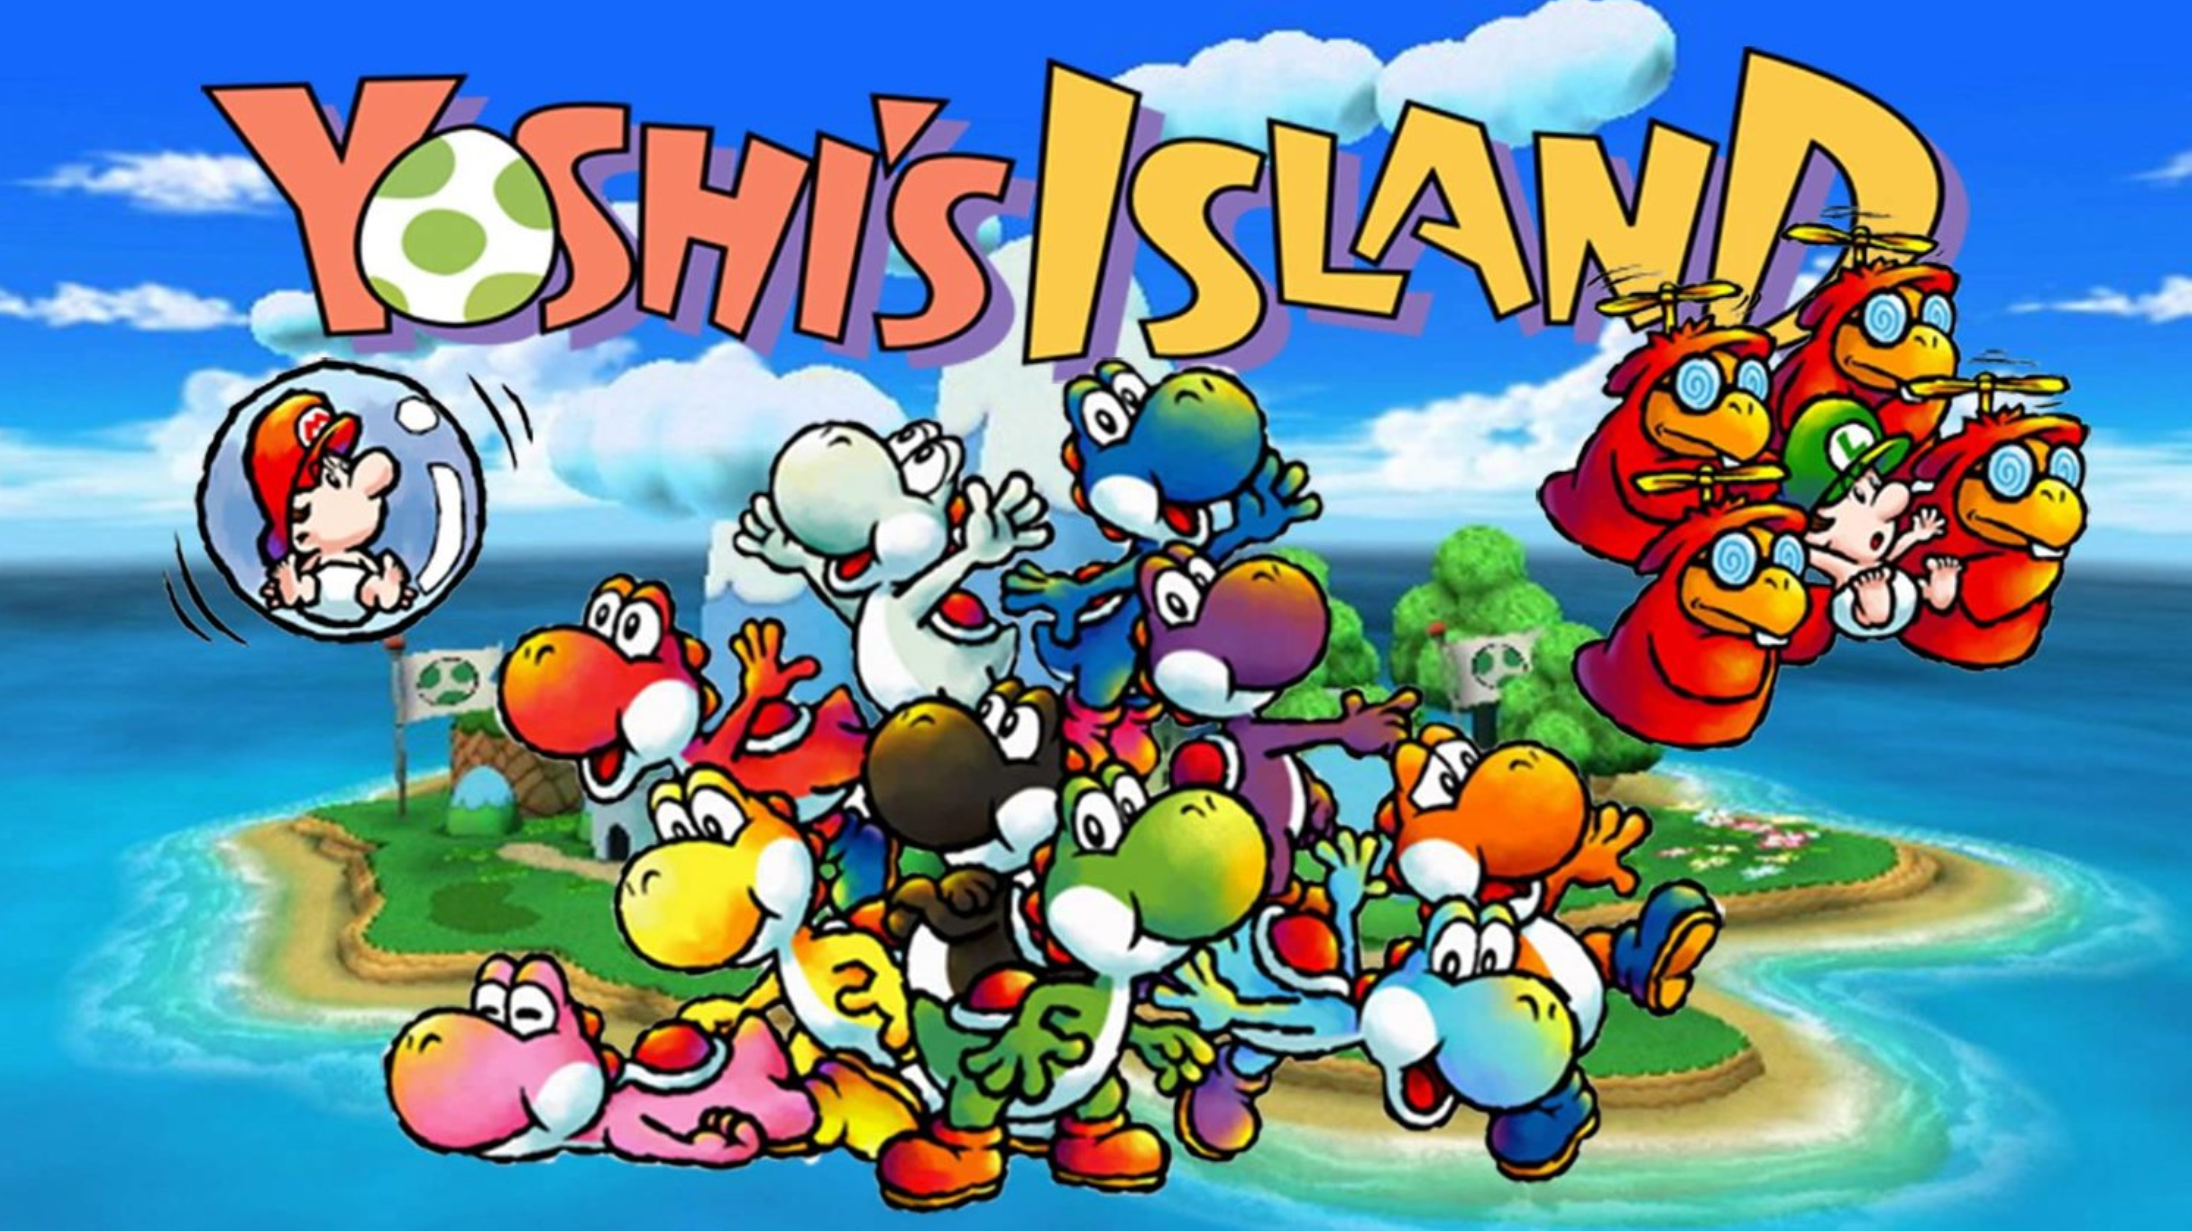 Super mario yoshi. Super Mario World 2 Yoshi's Island. Super Mario World 2 Yoshis Island. Super Mario World 2 остров Йоши. Super Mario World 2 - Yoshi's Island Snes.